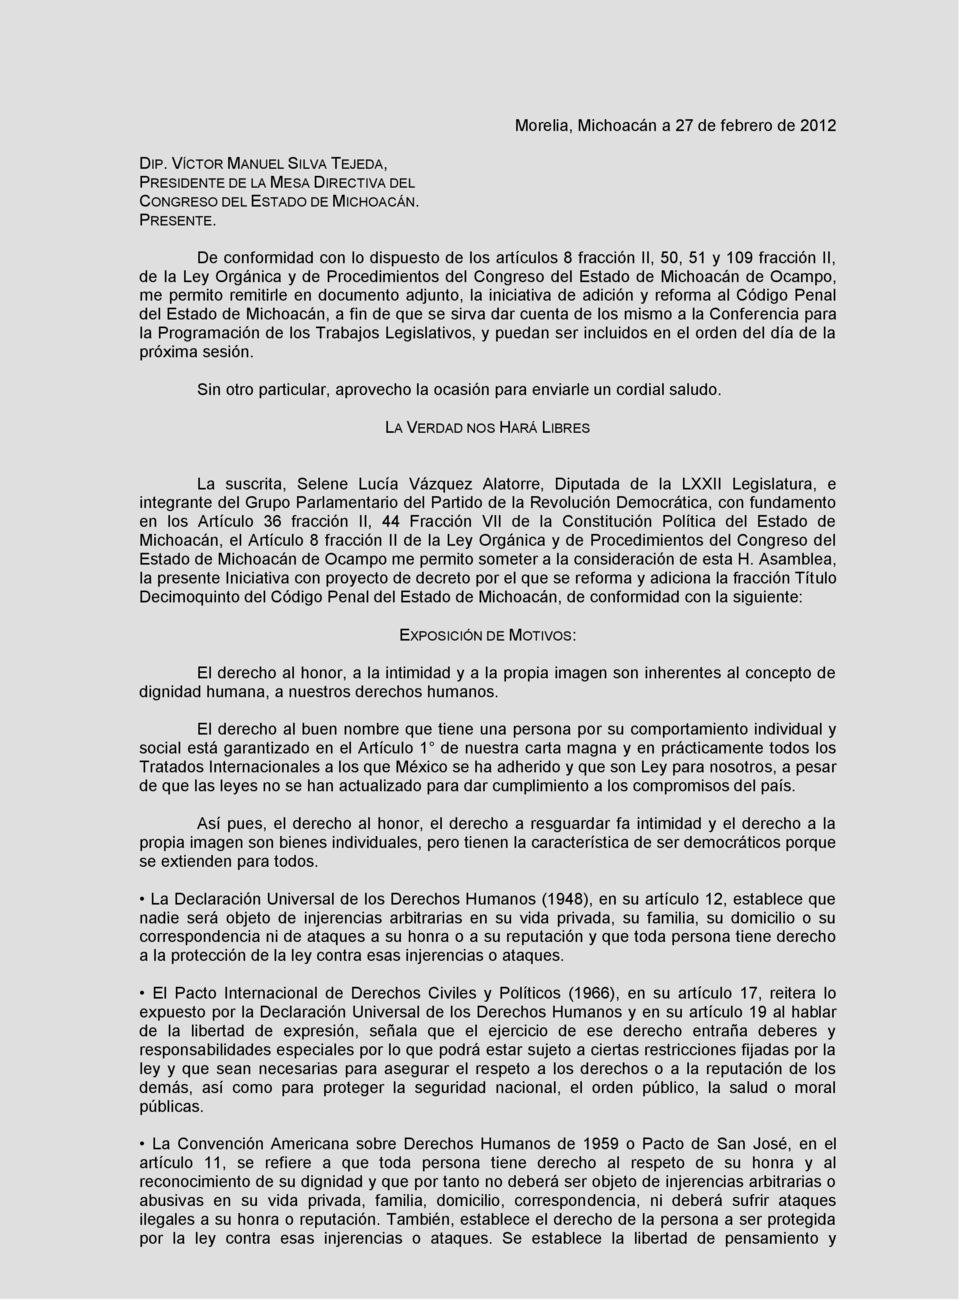 en documento adjunto, la iniciativa de adición y reforma al Código Penal del Estado de Michoacán, a fin de que se sirva dar cuenta de los mismo a la Conferencia para la Programación de los Trabajos